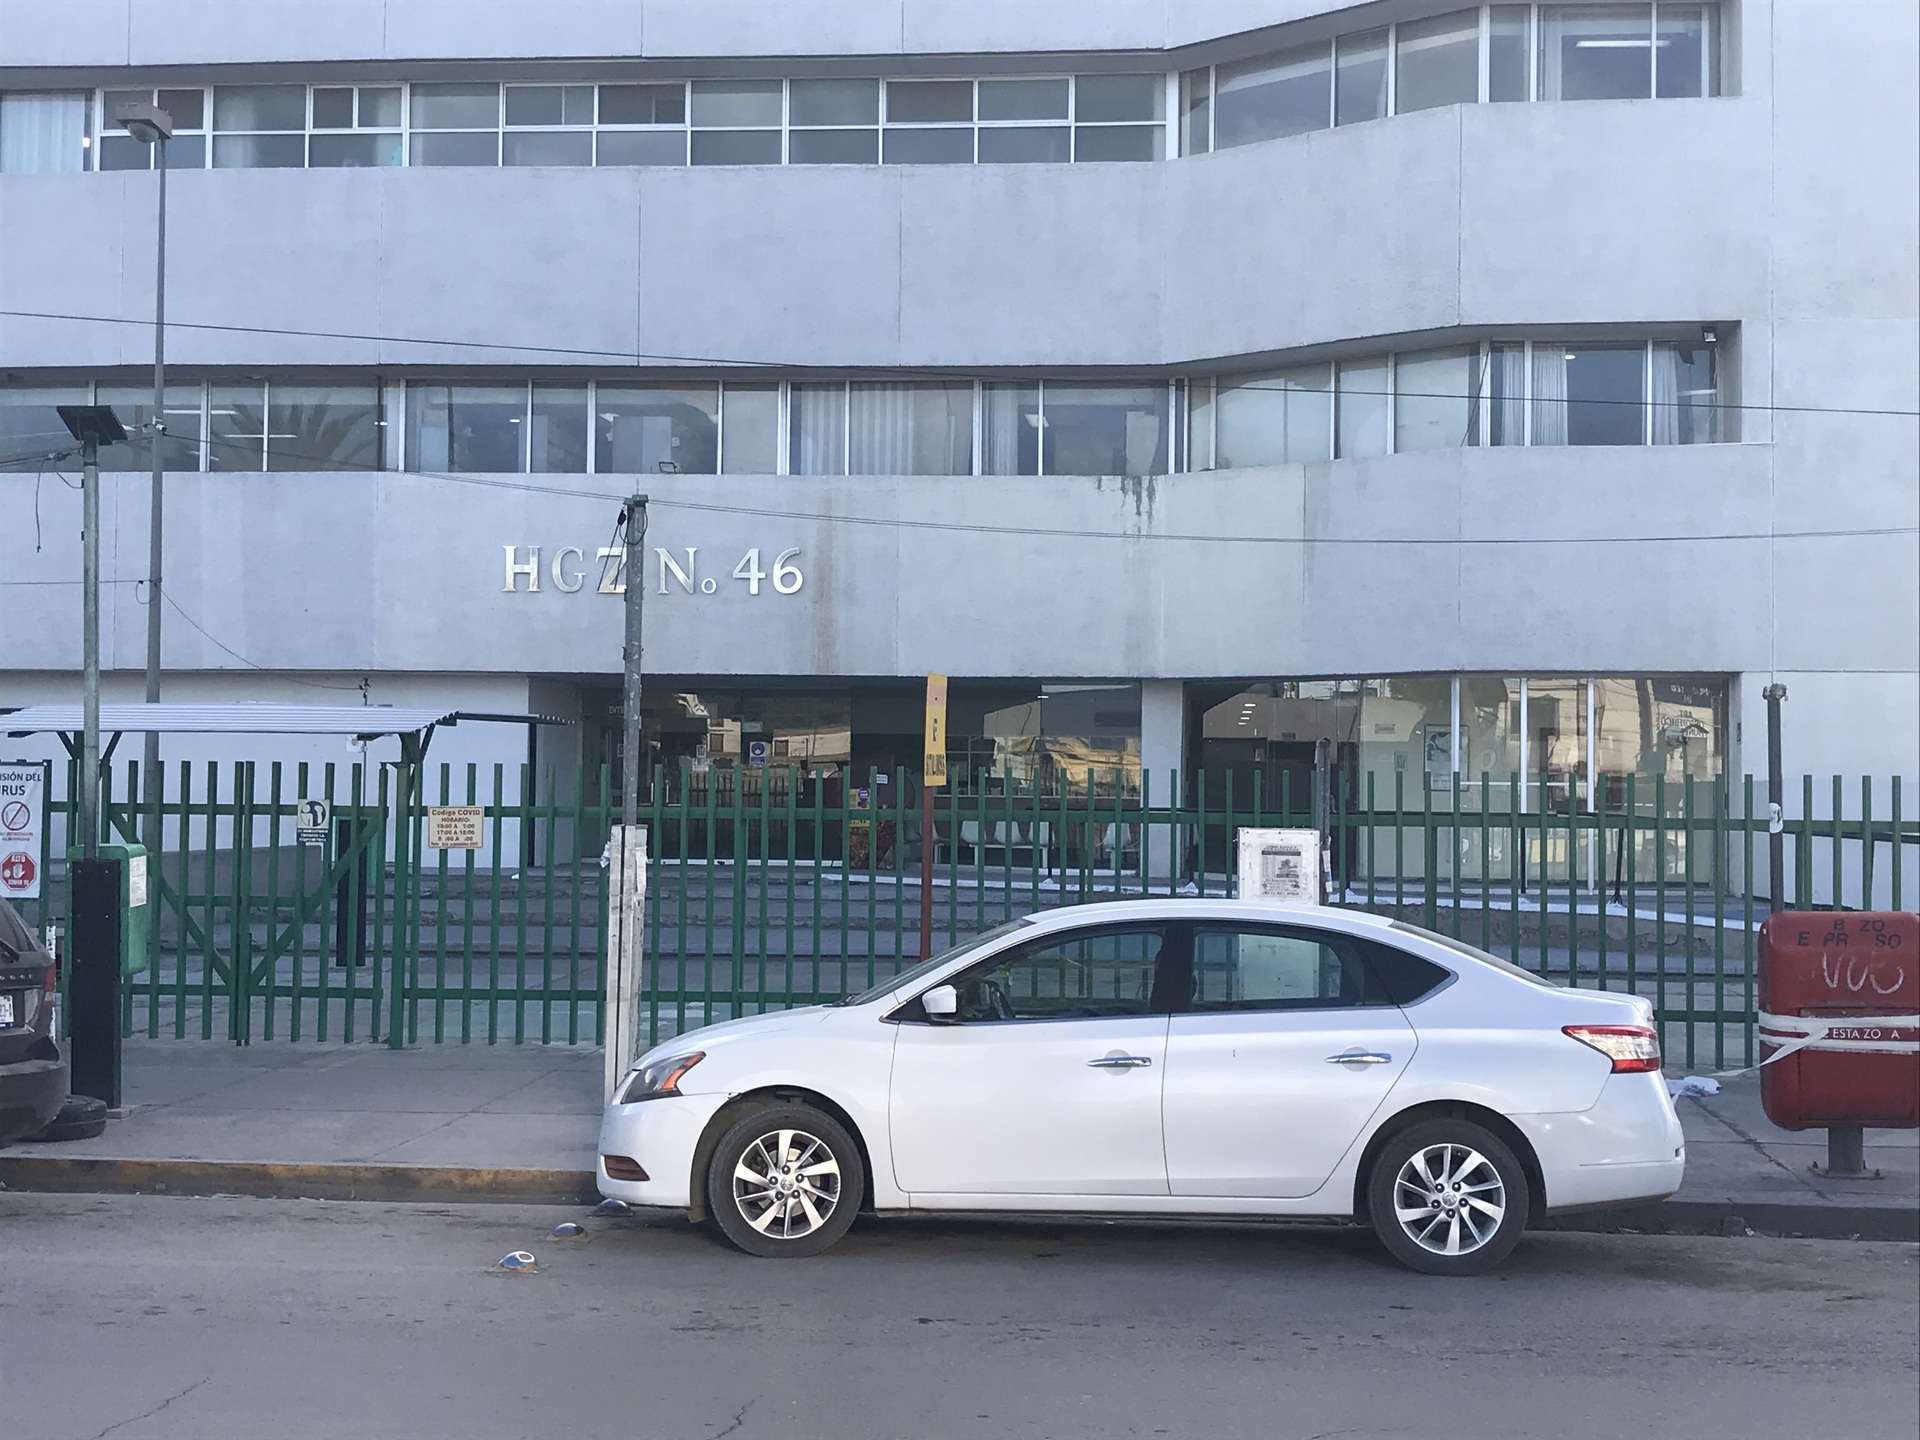 Hospitalizan a menor de un año que ingirió clonazepam en Gómez Palacio